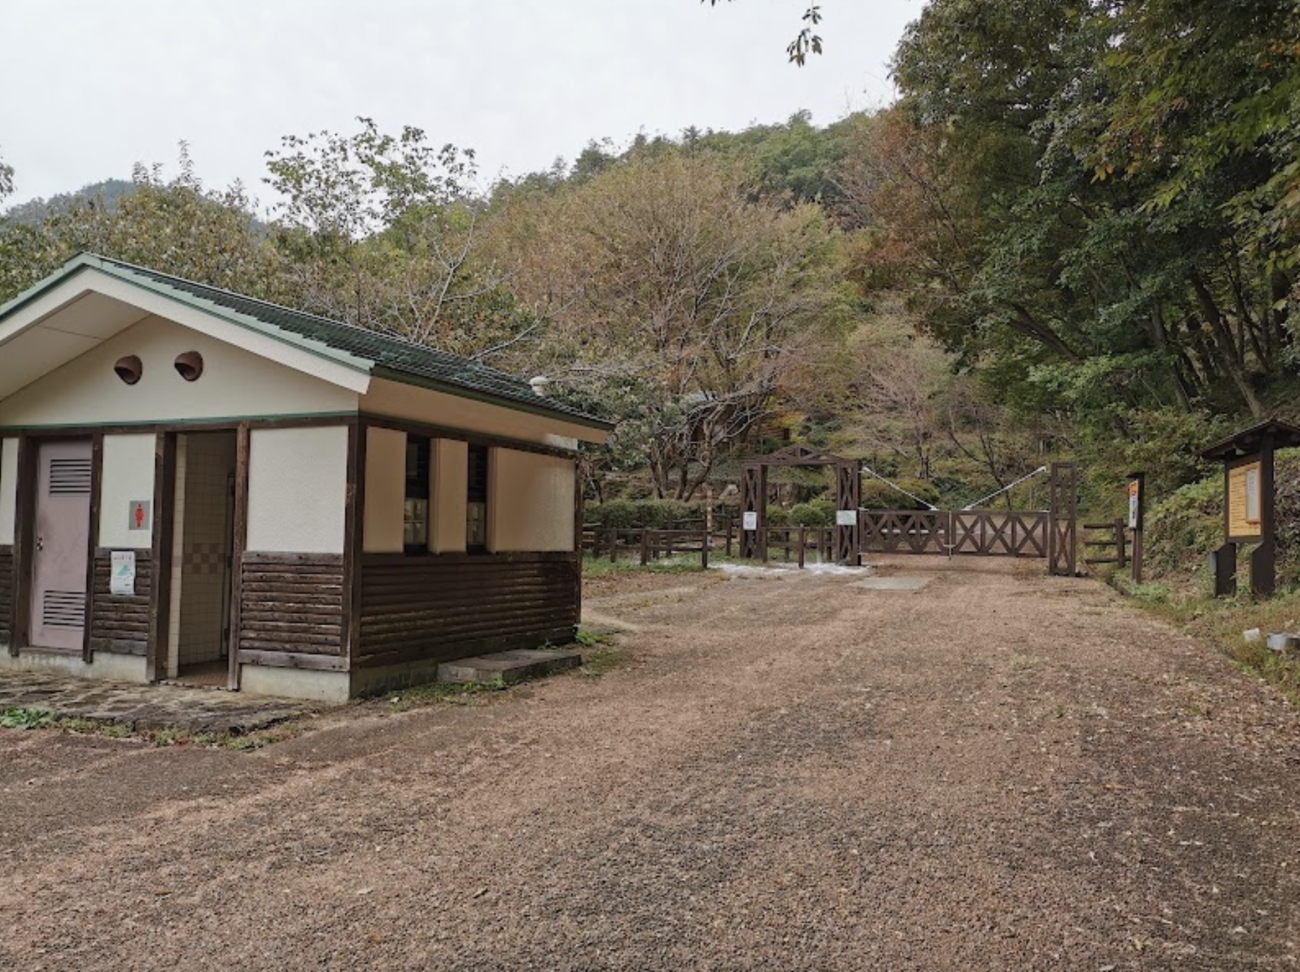 【ハロウィンのための生贄の確保か?】岐阜県で山登りをしていた6歳男児が行方不明 祖父がトイレに行った“3分間”で姿を消す